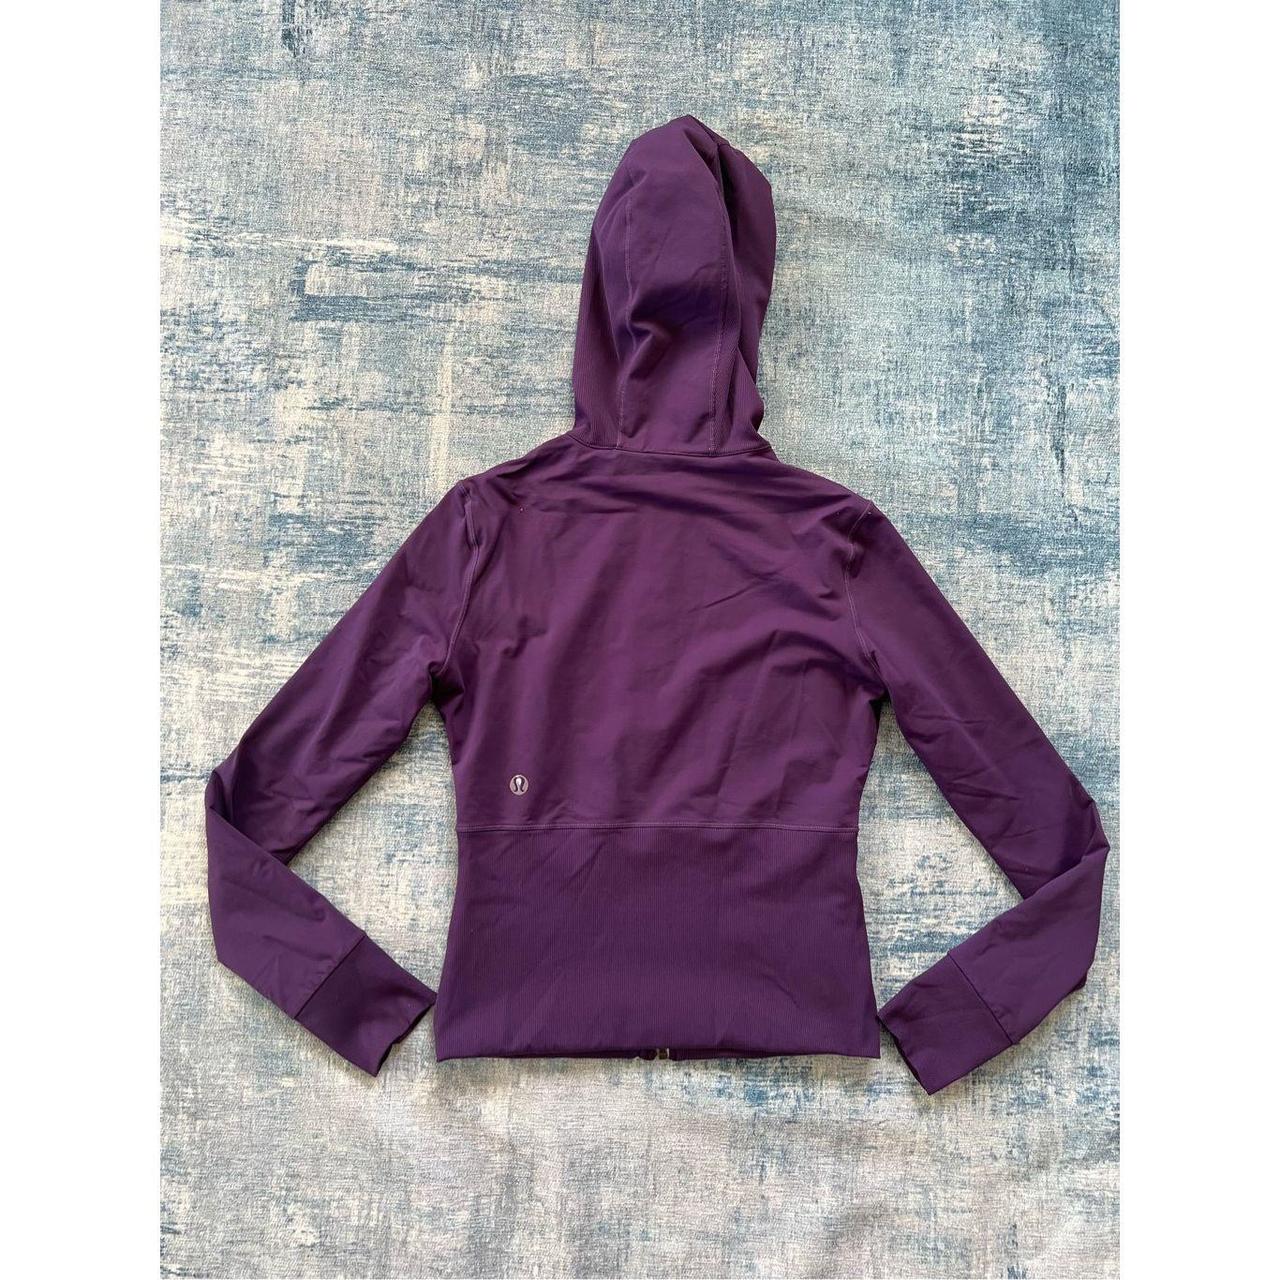 Lululemon Purple Hoodie Size Medium (8)